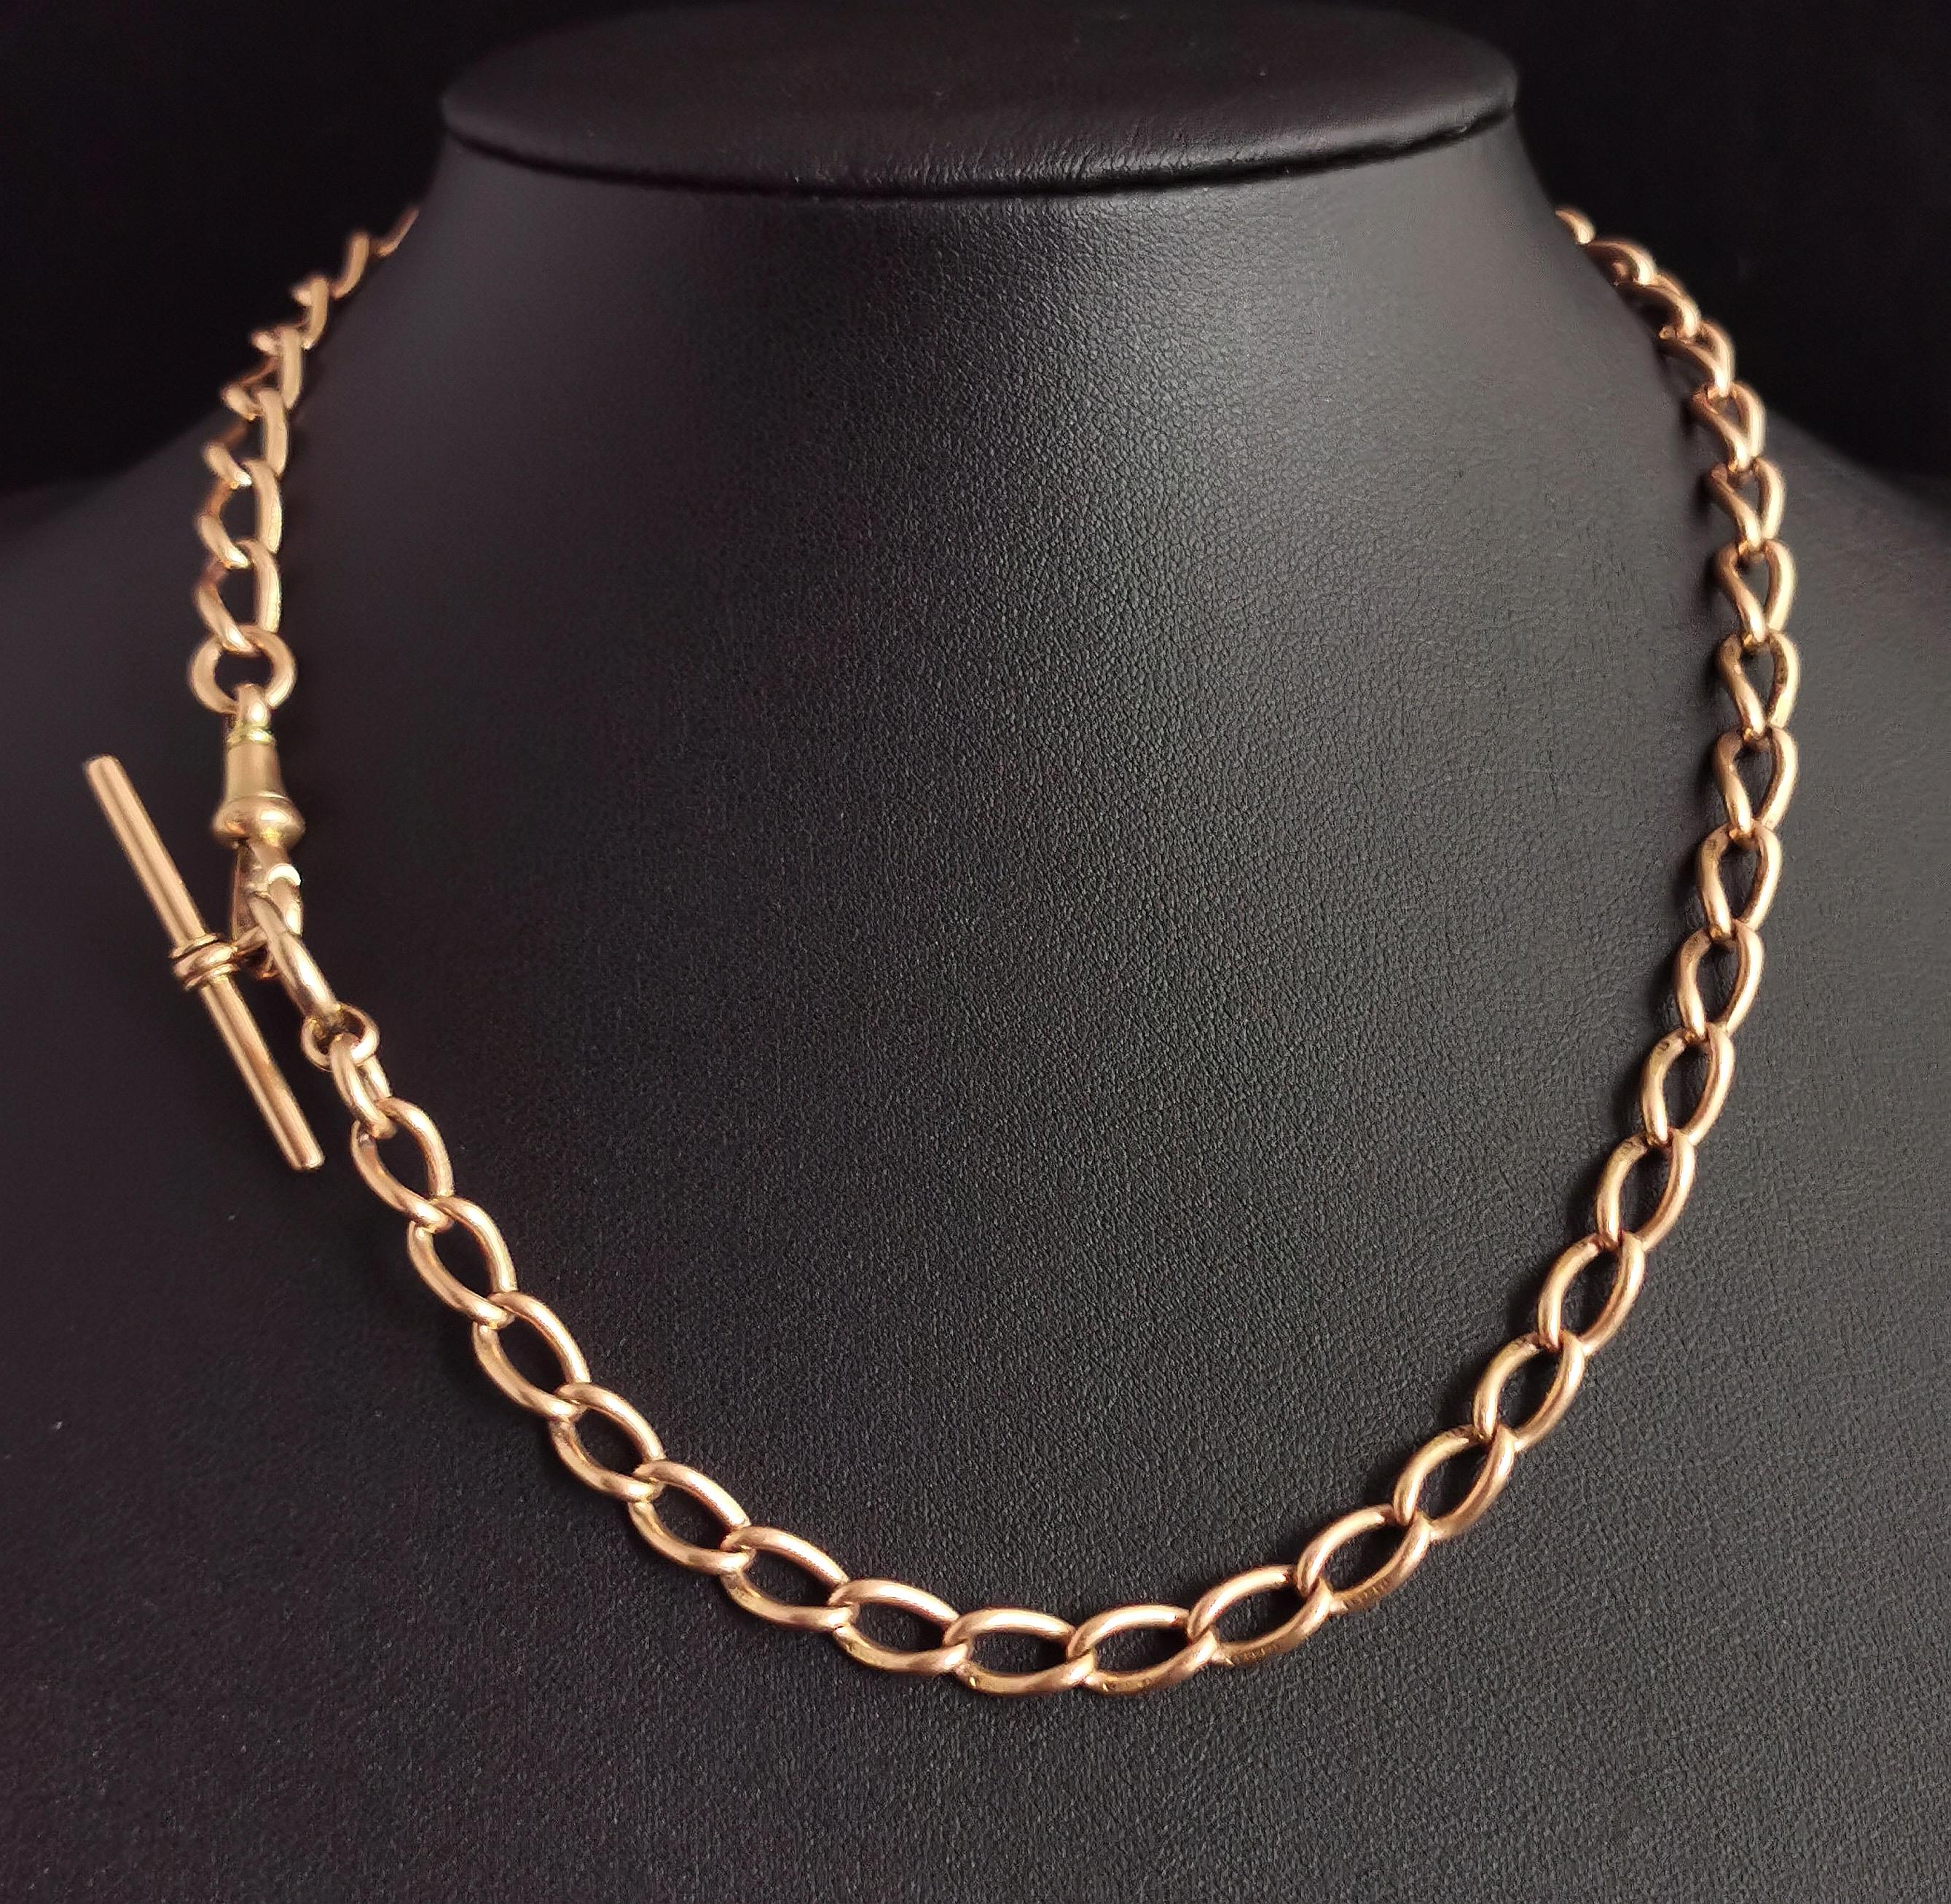 Antique 15k Gold Albert Chain, Watch Chain Necklace, Victorian 4